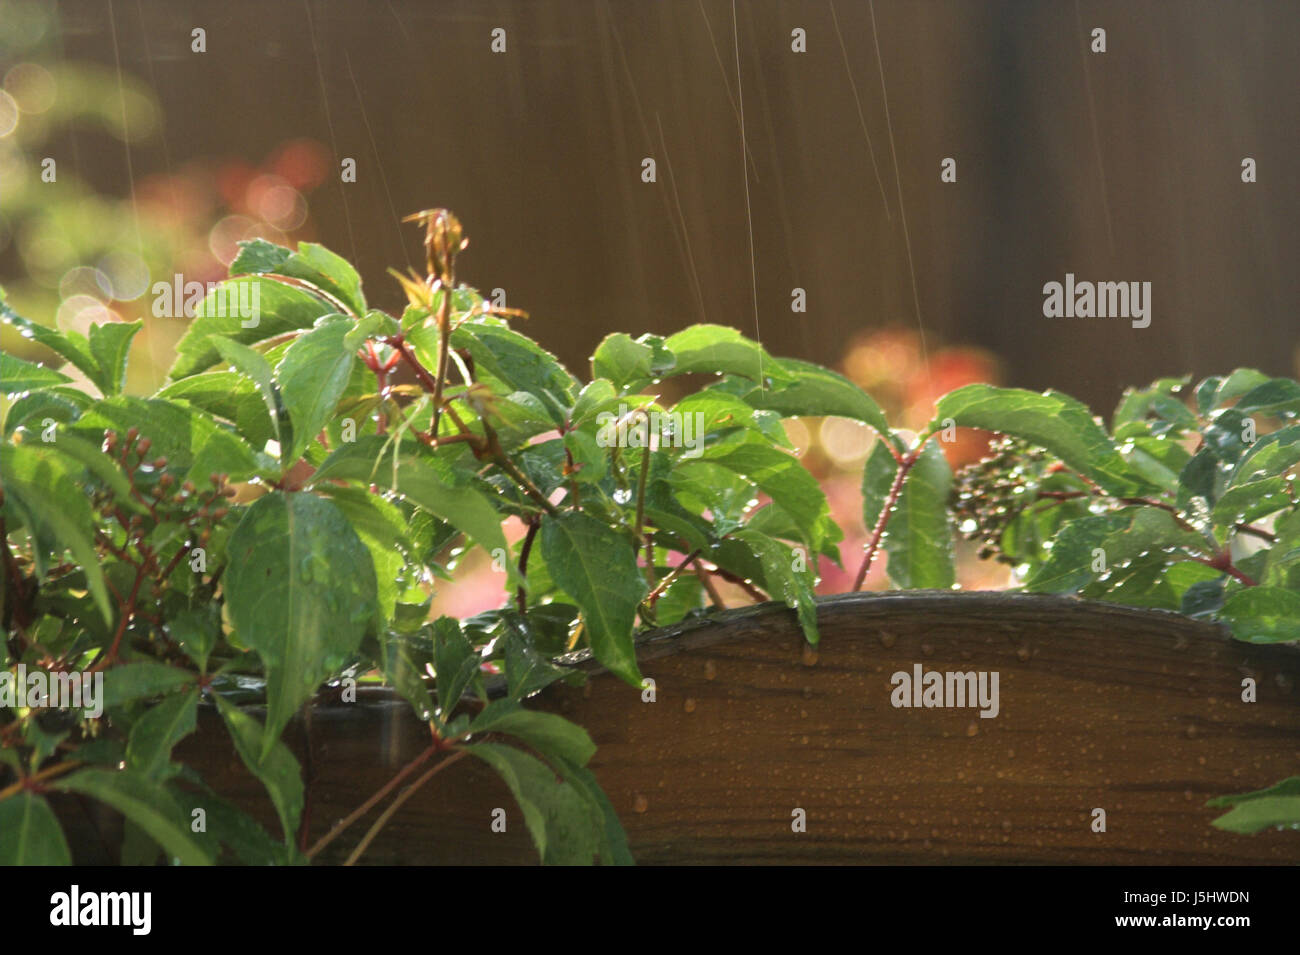 Verde foglia selvatica pianta rampicante umido impianto decorativo sunshine aumento scalare Foto Stock